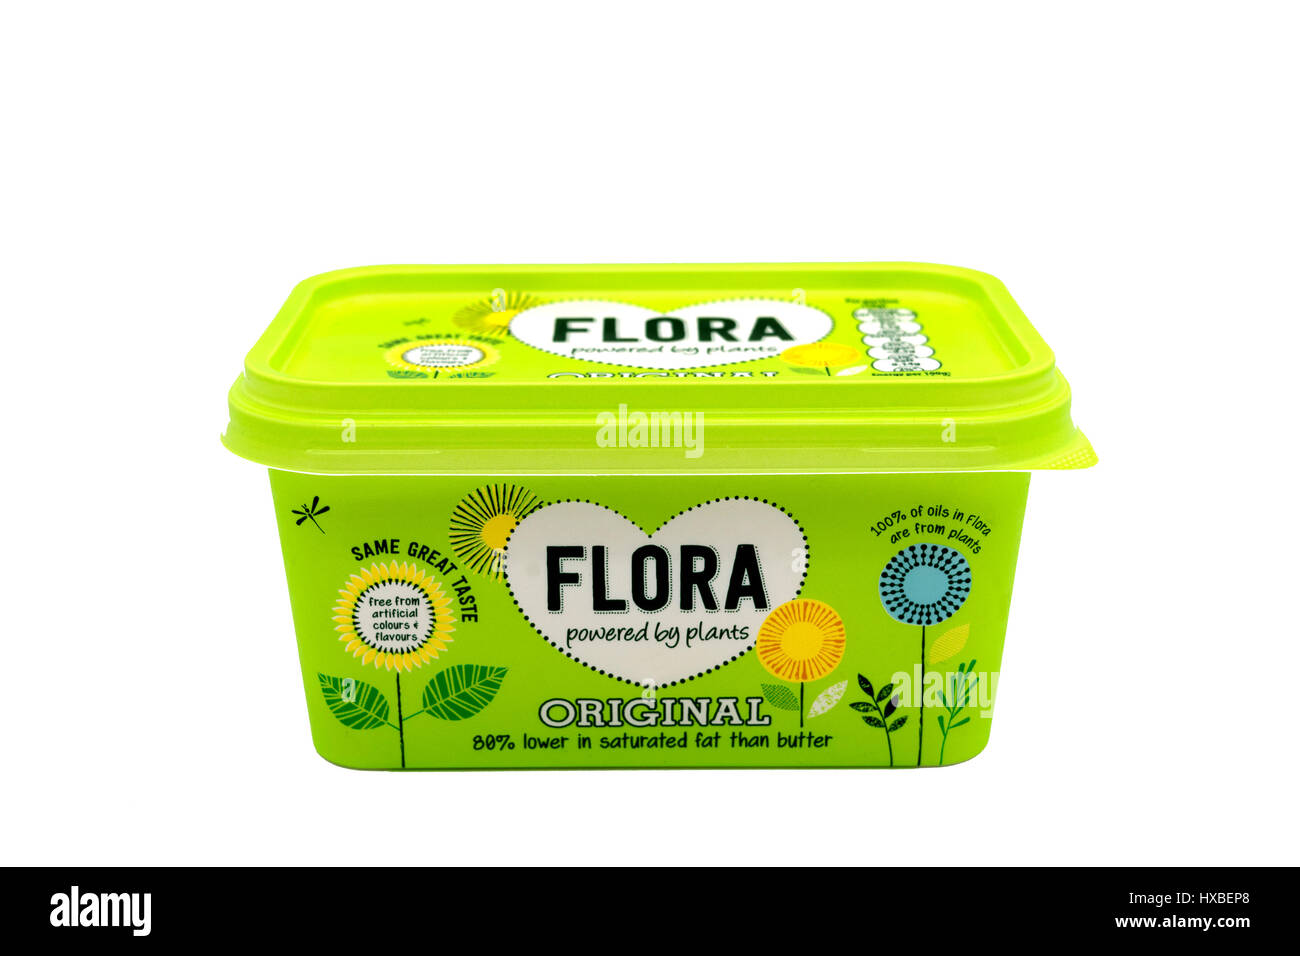 Flora La margarina sobre un fondo blanco. Foto de stock